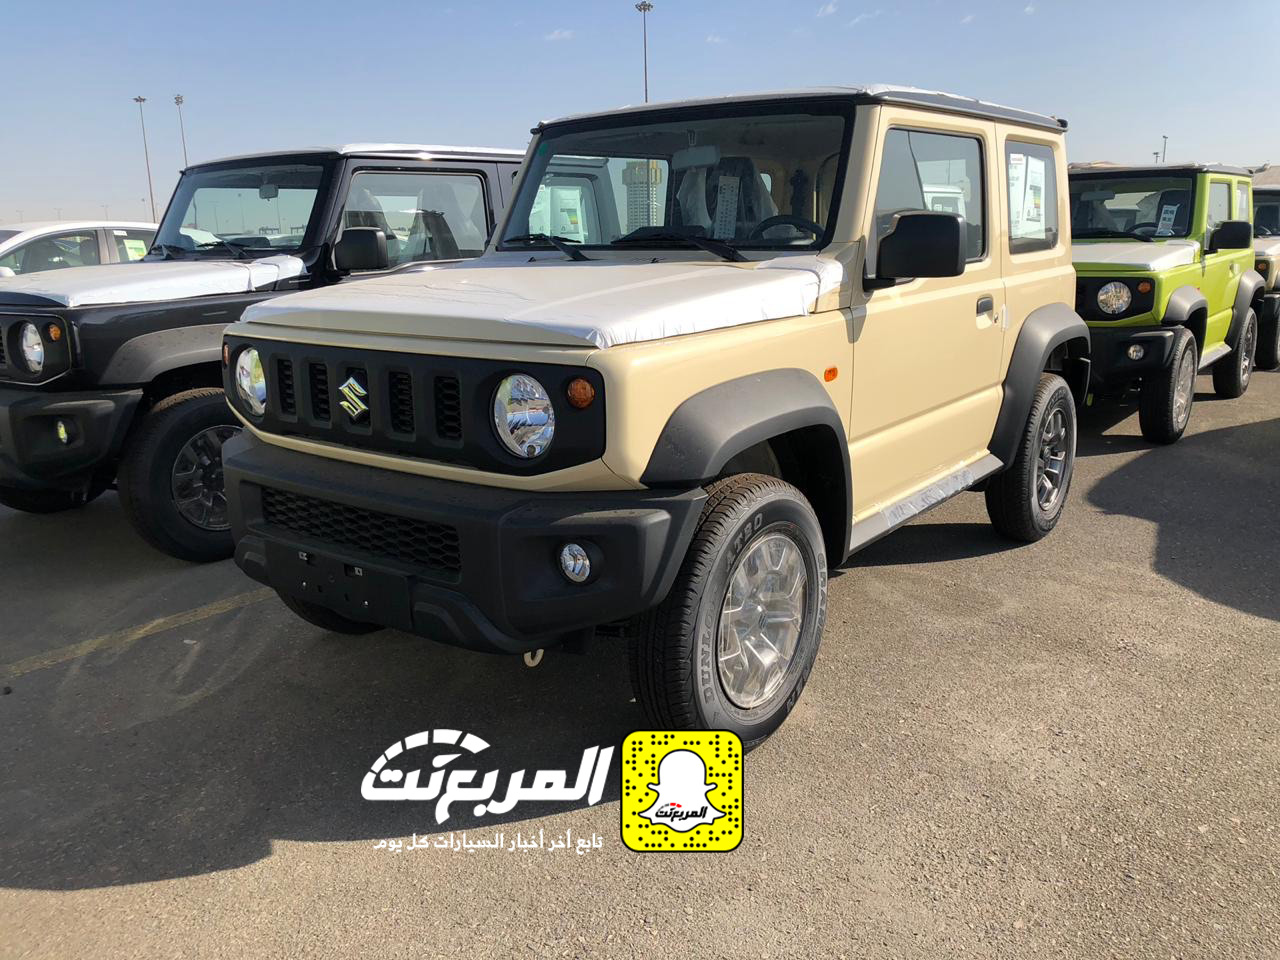 “بالصور” وصول سوزوكي جيمني 2019 الشكل الجديد الى السعودية + المواصفات Suzuki Jimny